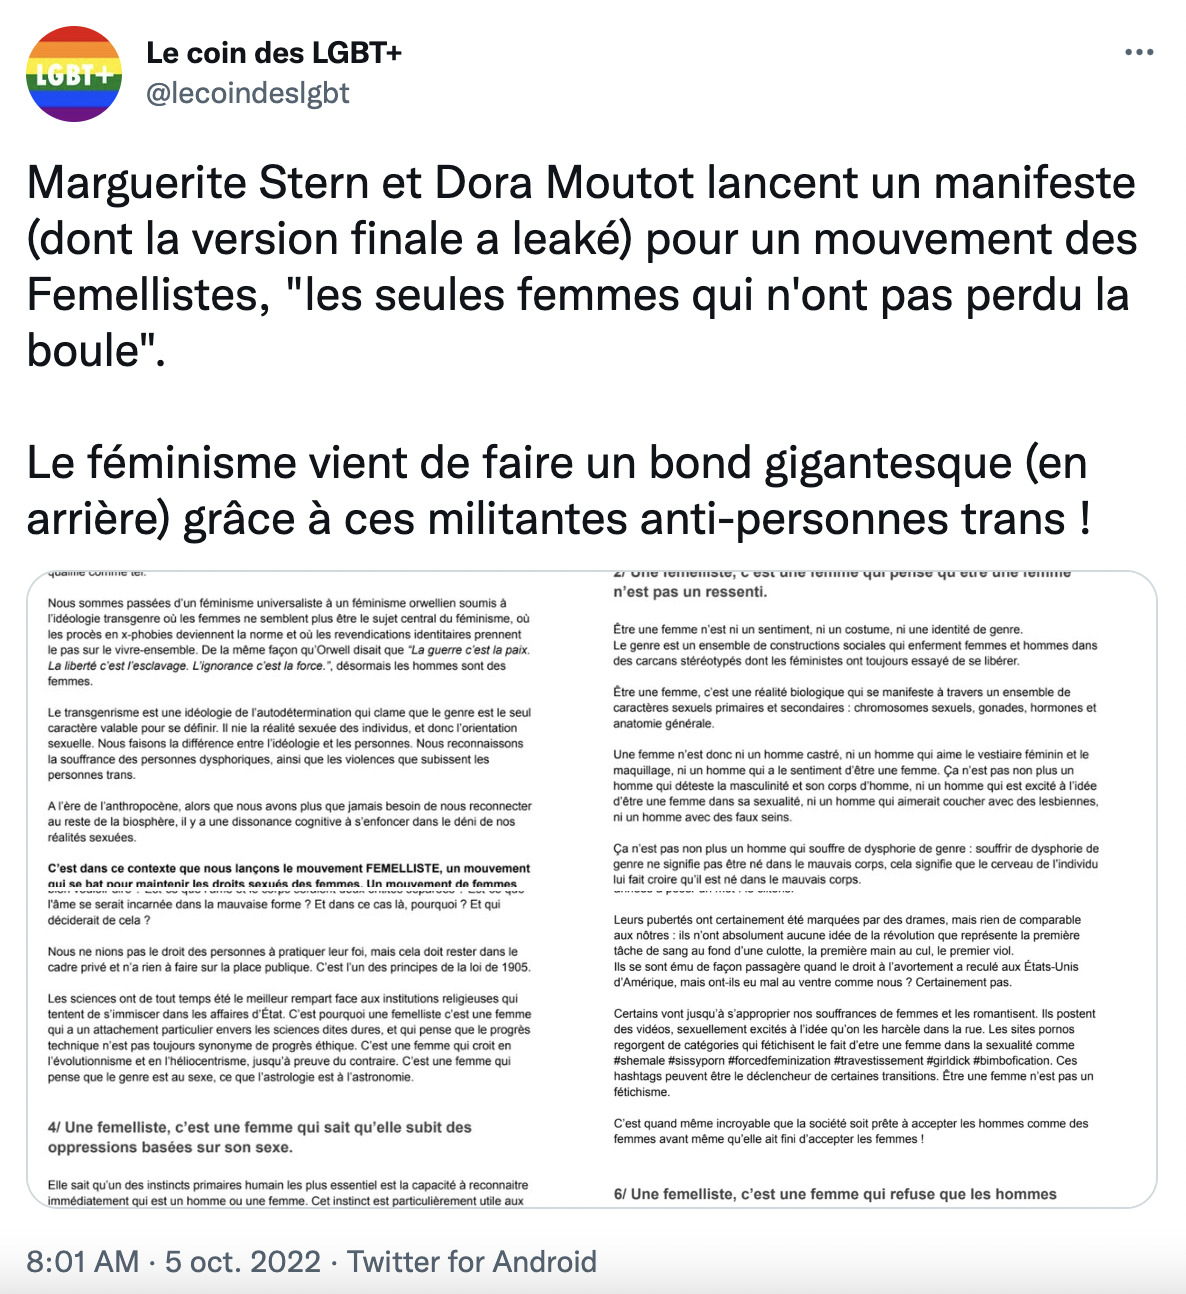 Marguerite Stern et Dora Moutot lancent un manifeste (dont la version finale a leaké) pour un mouvement des Femellistes